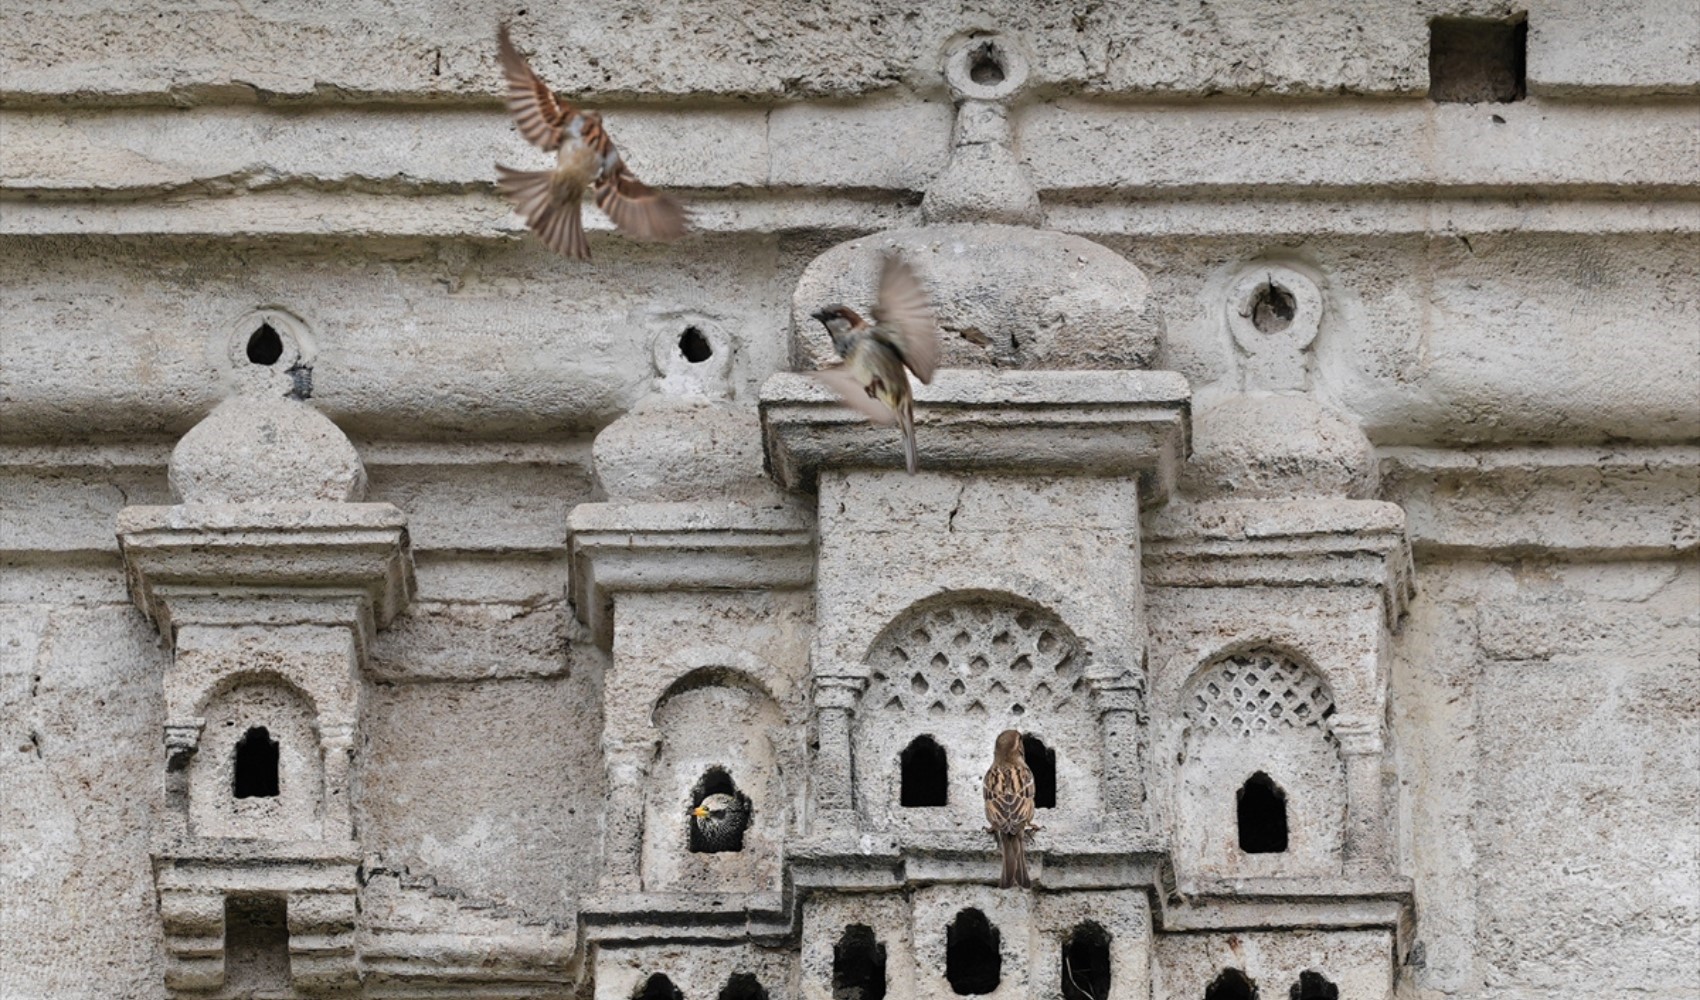 Osmanlı kuş sarayları beş asırdır birçok kuş türüne ev sahipliği yapıyor